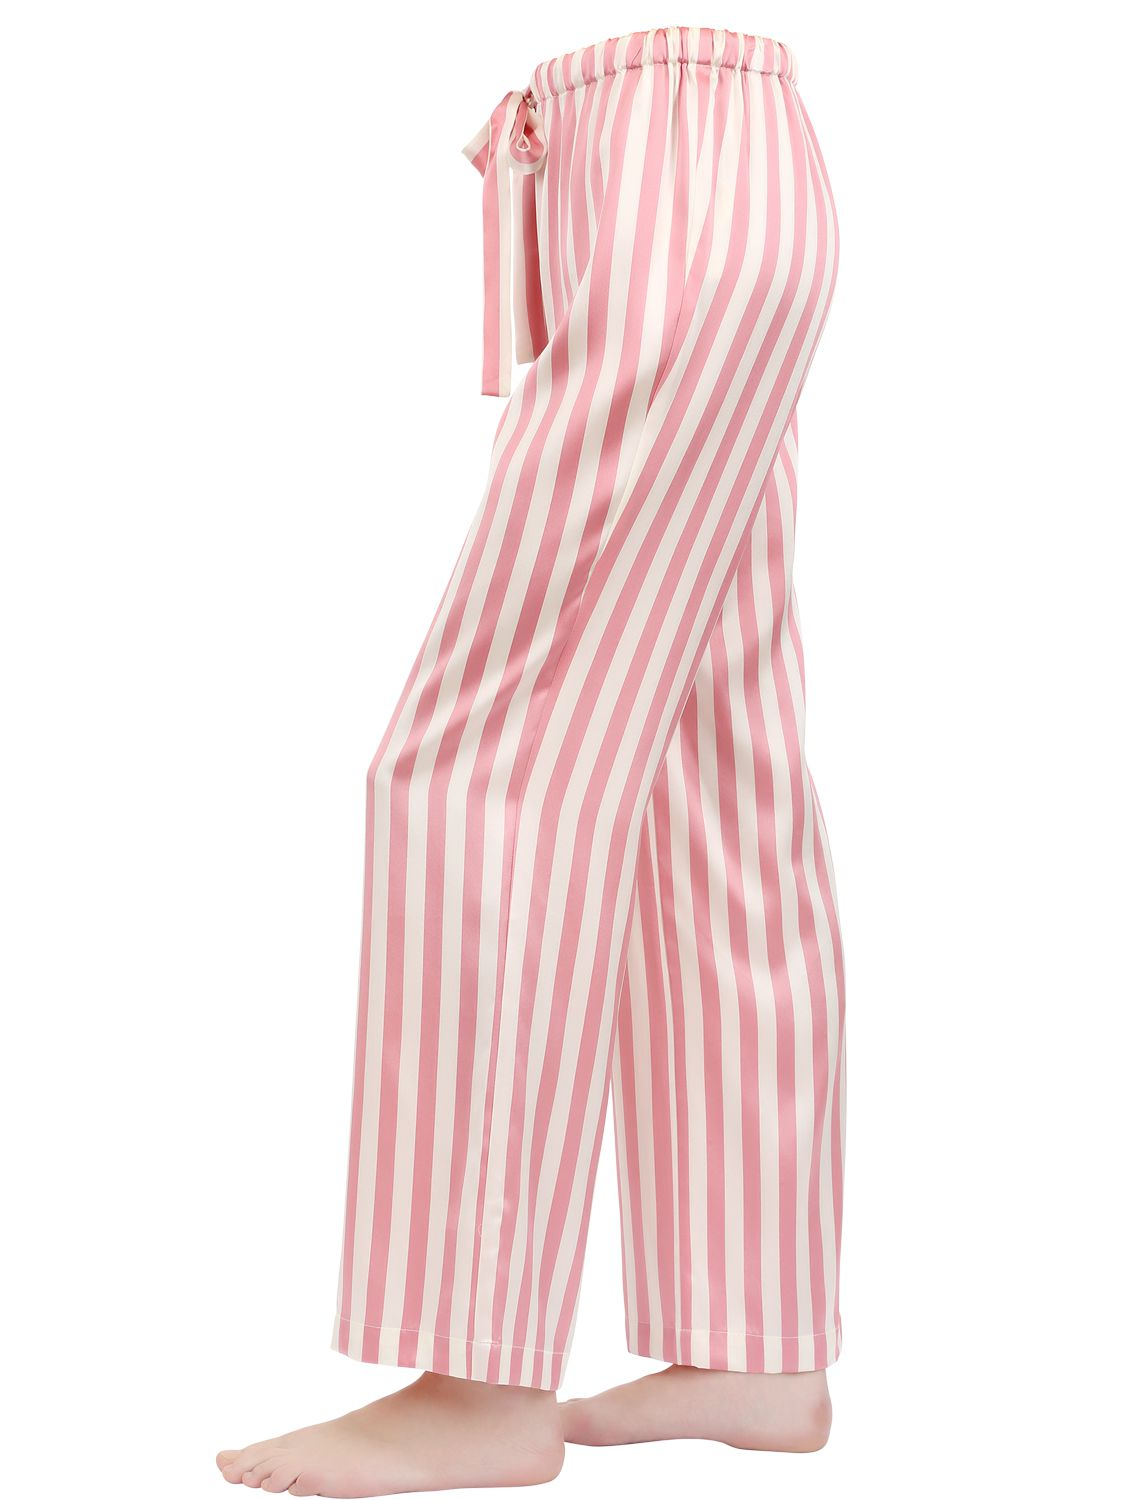 Lyst - Morgan Lane Chantal Striped Silk Satin Pajama Pants in Pink